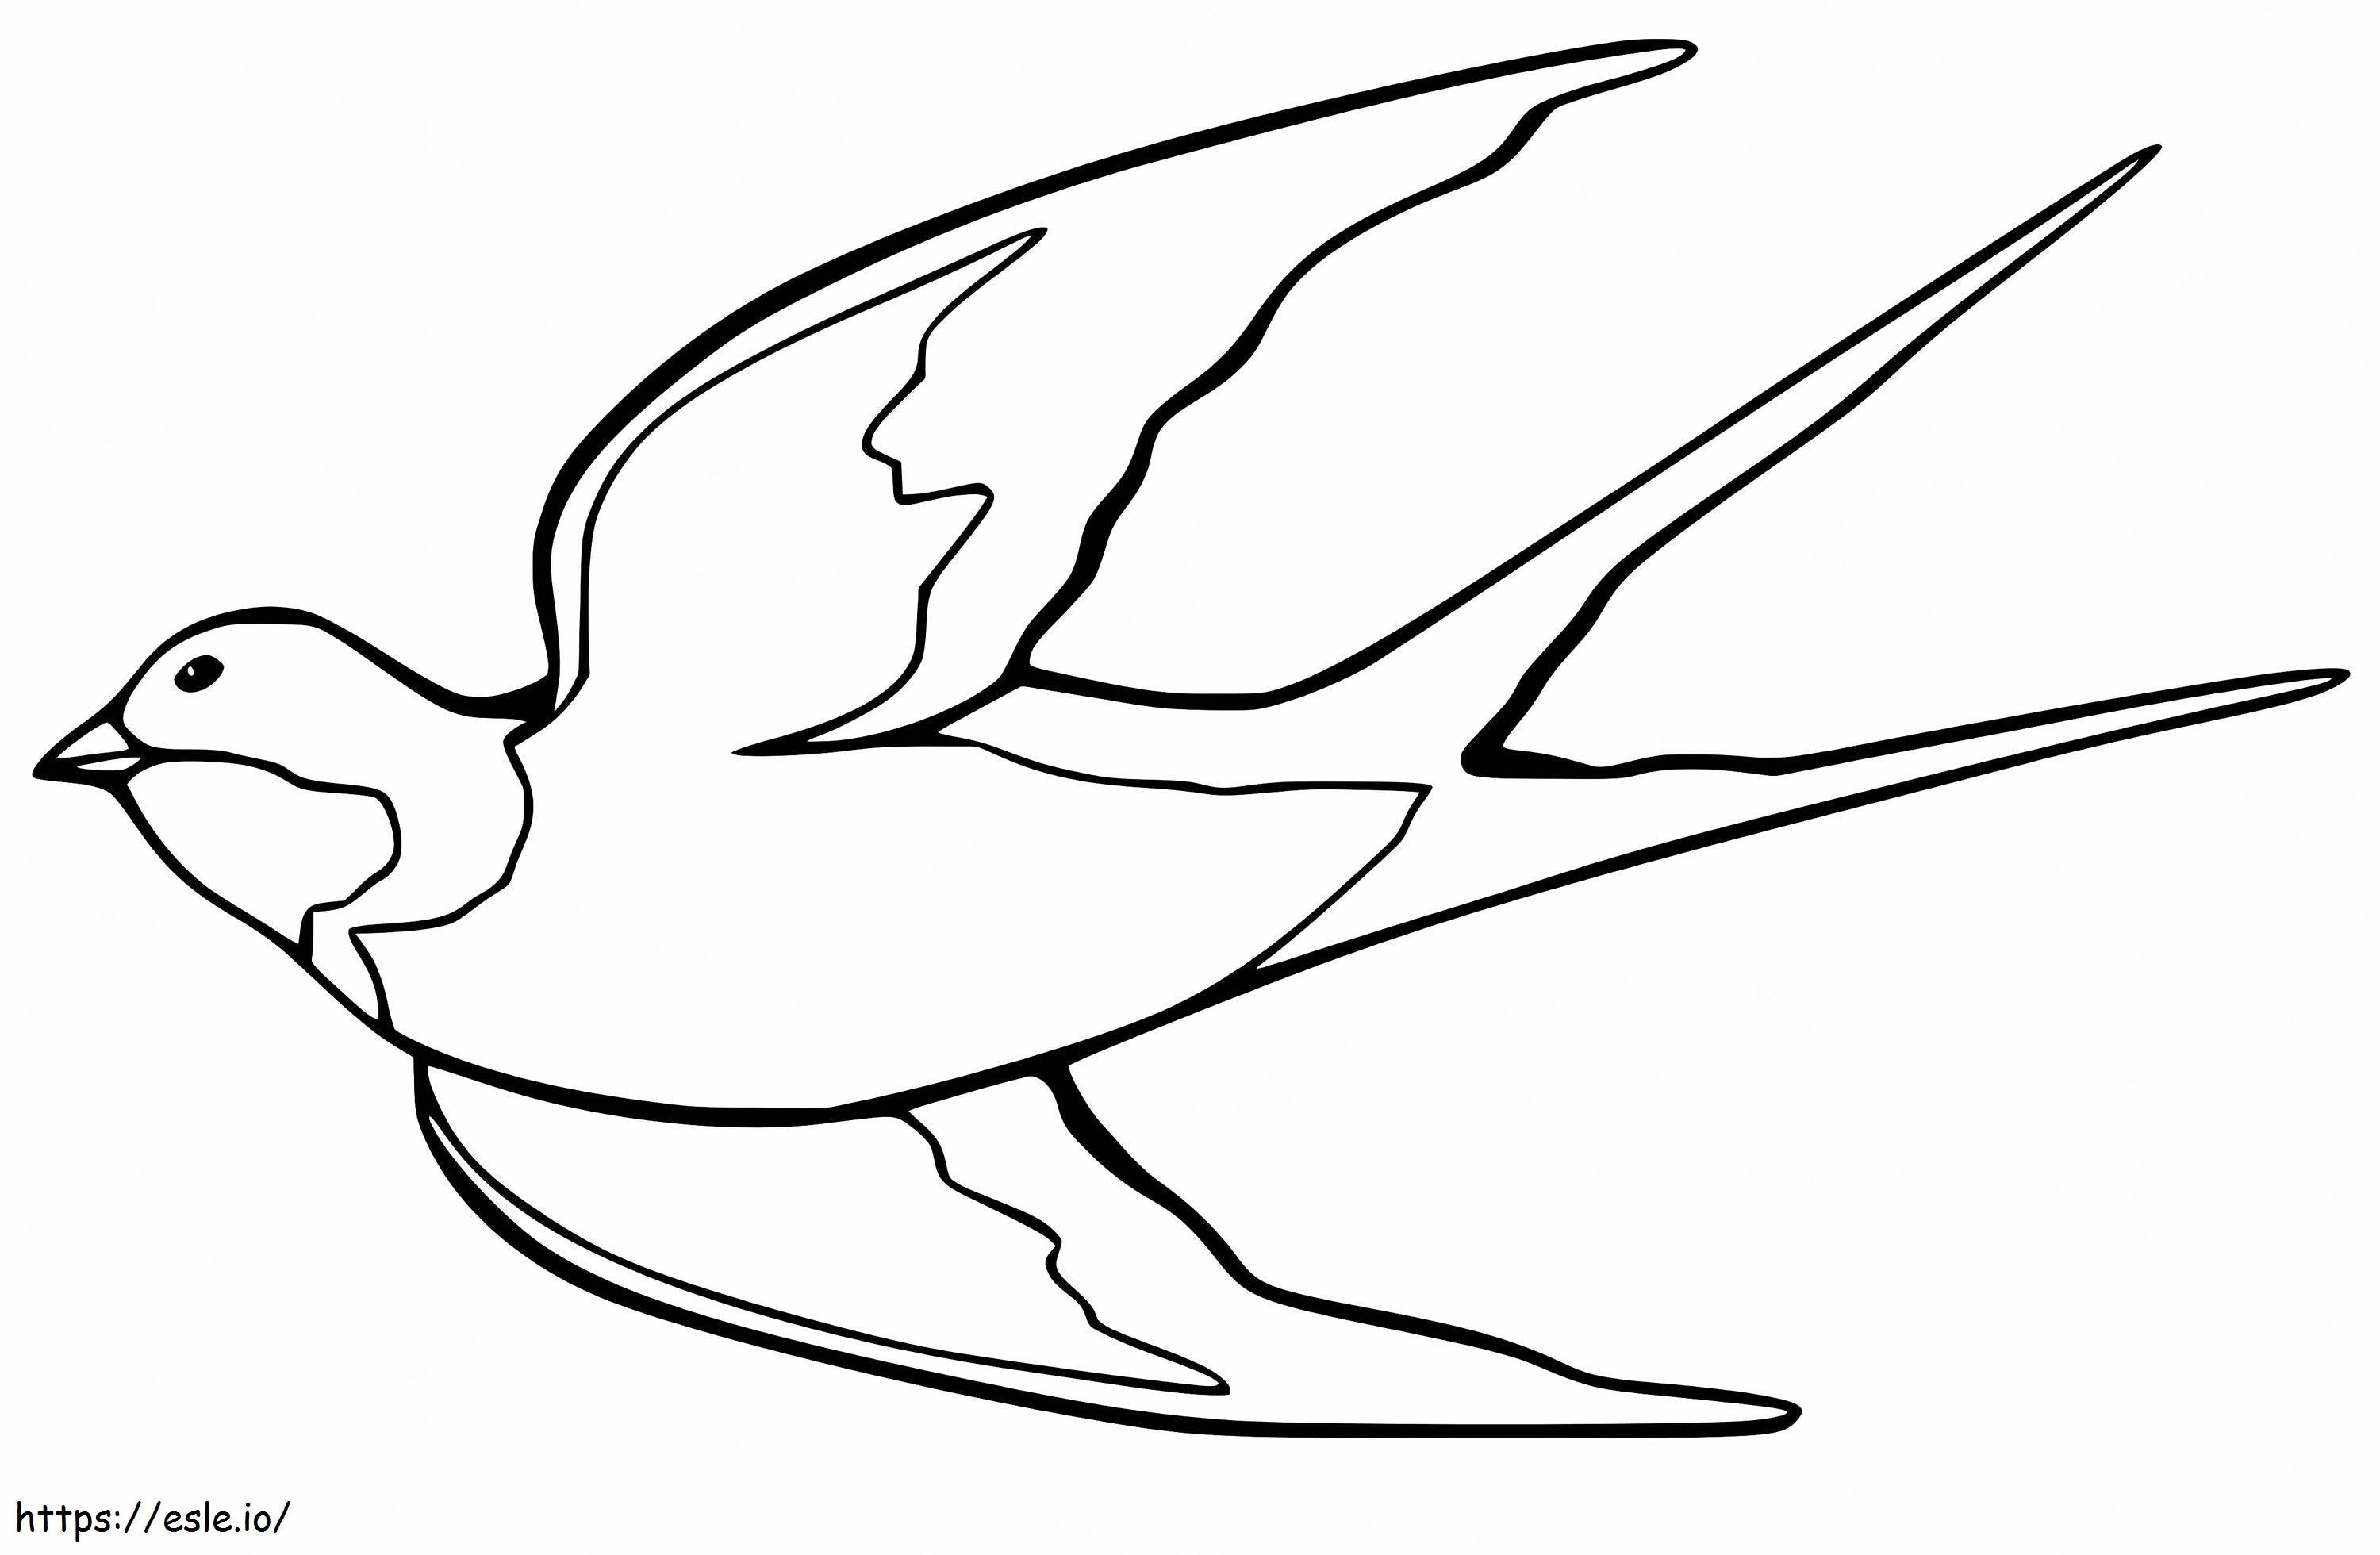 Zwaluw vliegt kleurplaat kleurplaat